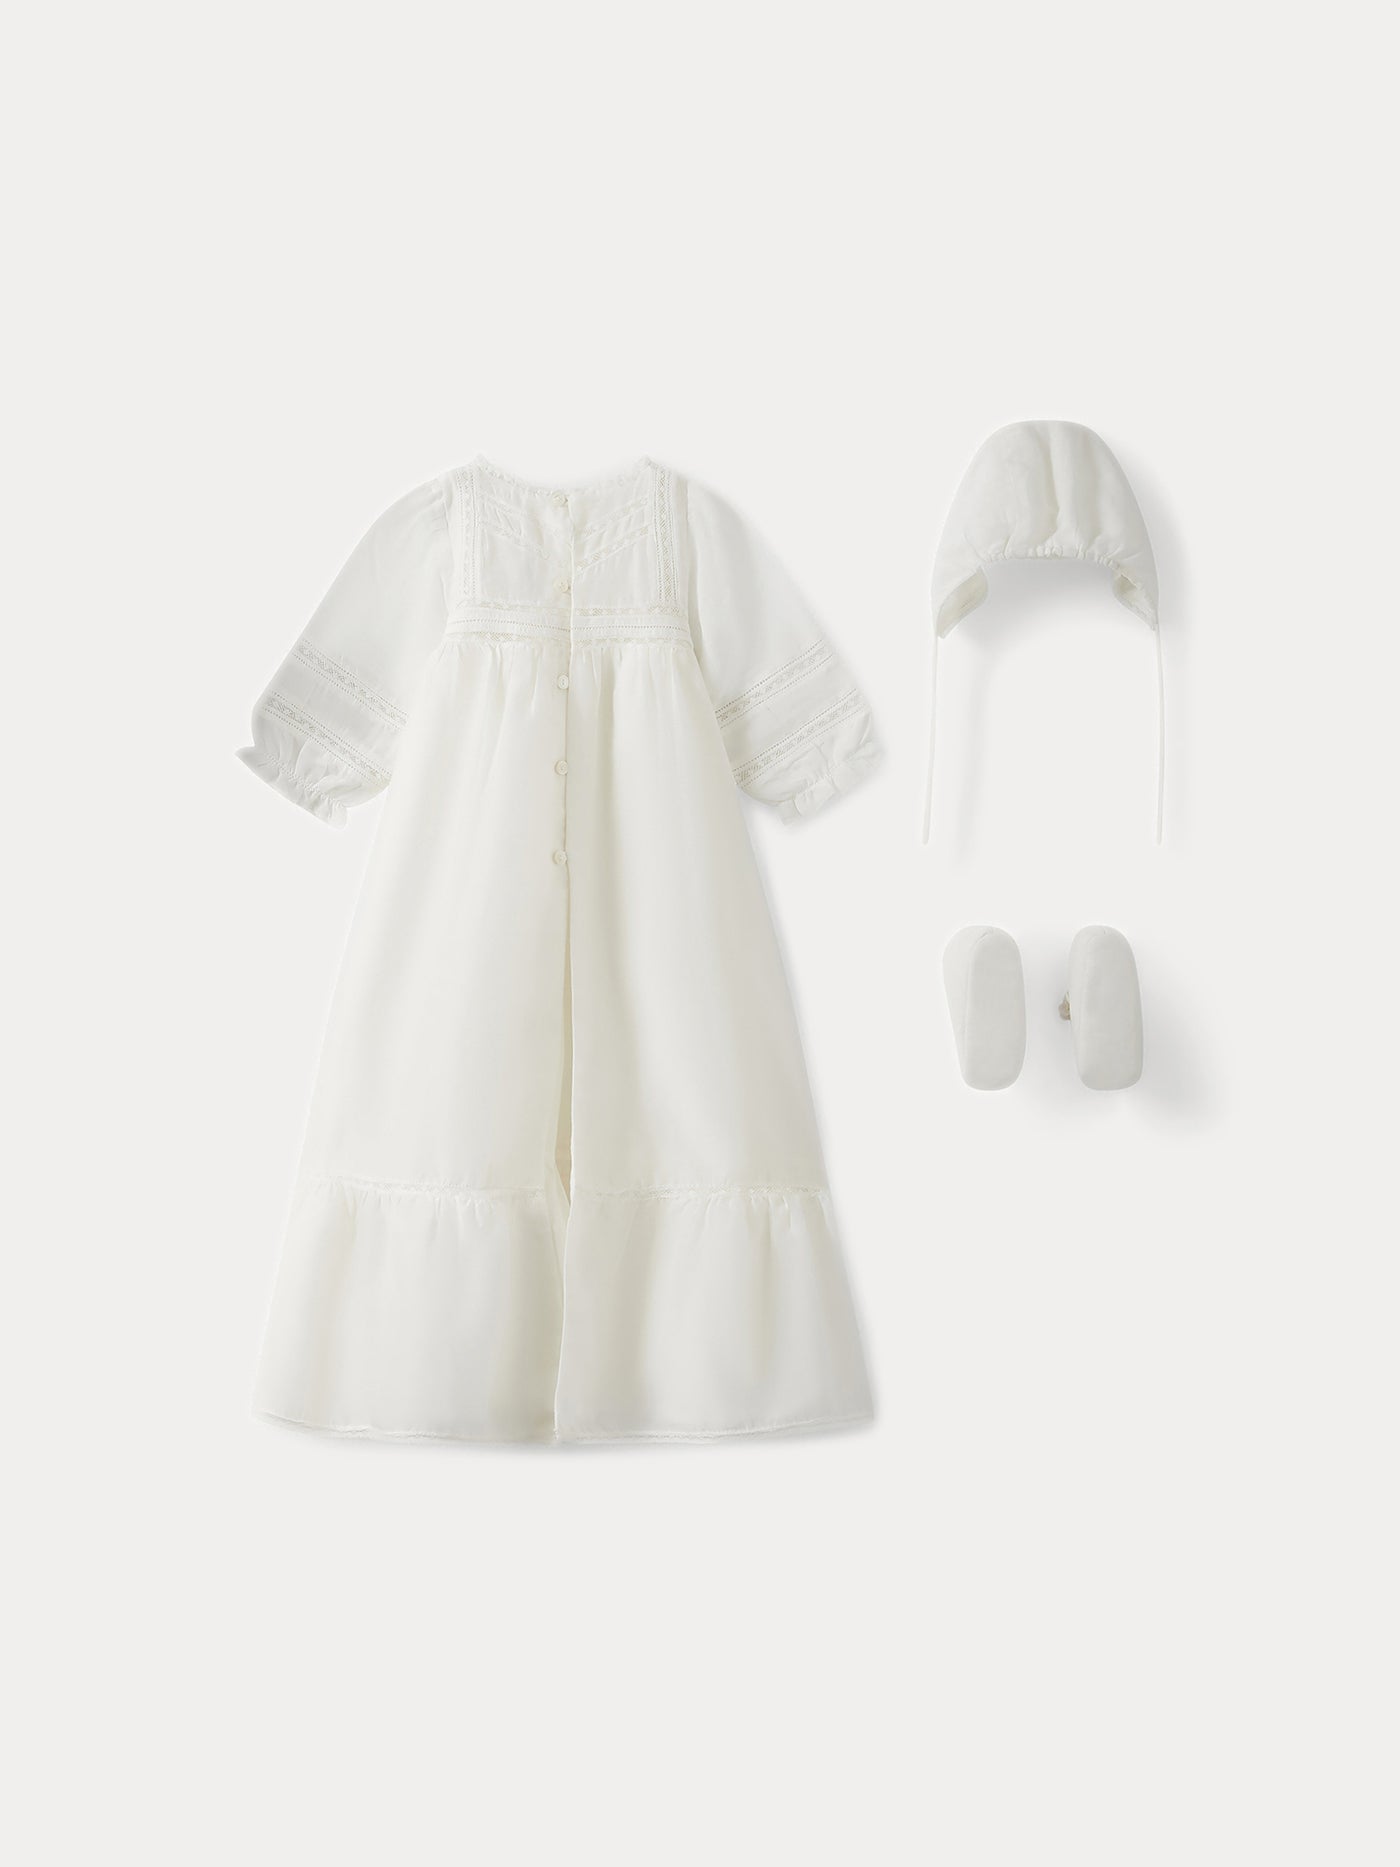 Silk Christening Dress for Baby milk white